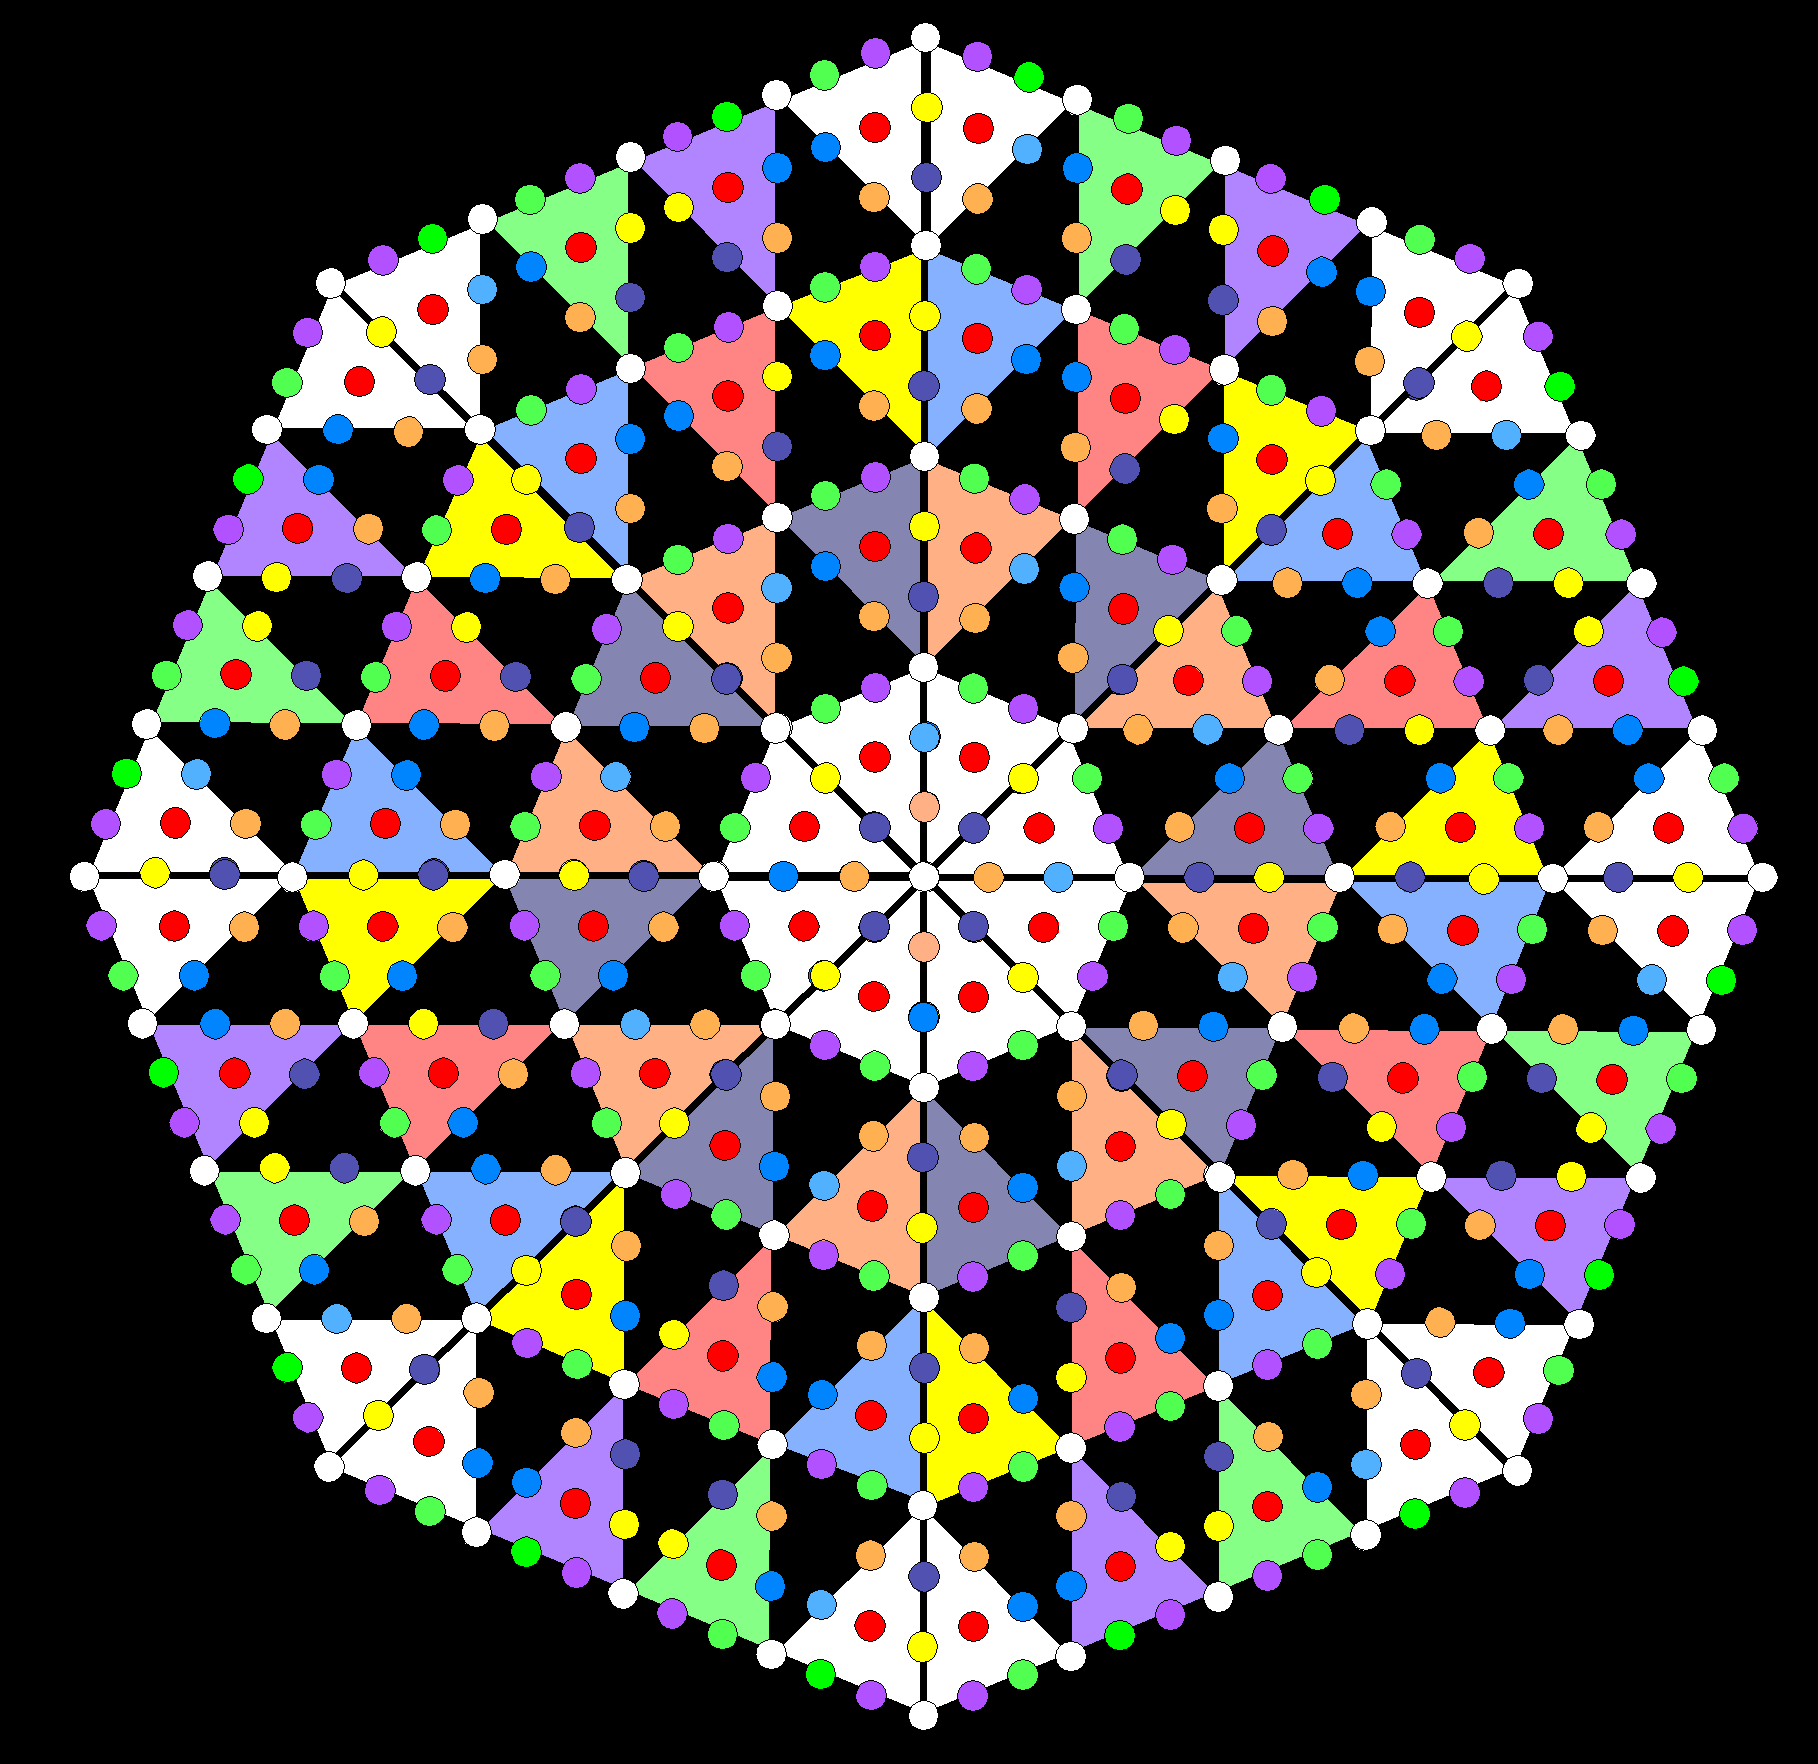 496 hexagonal yods in octagon